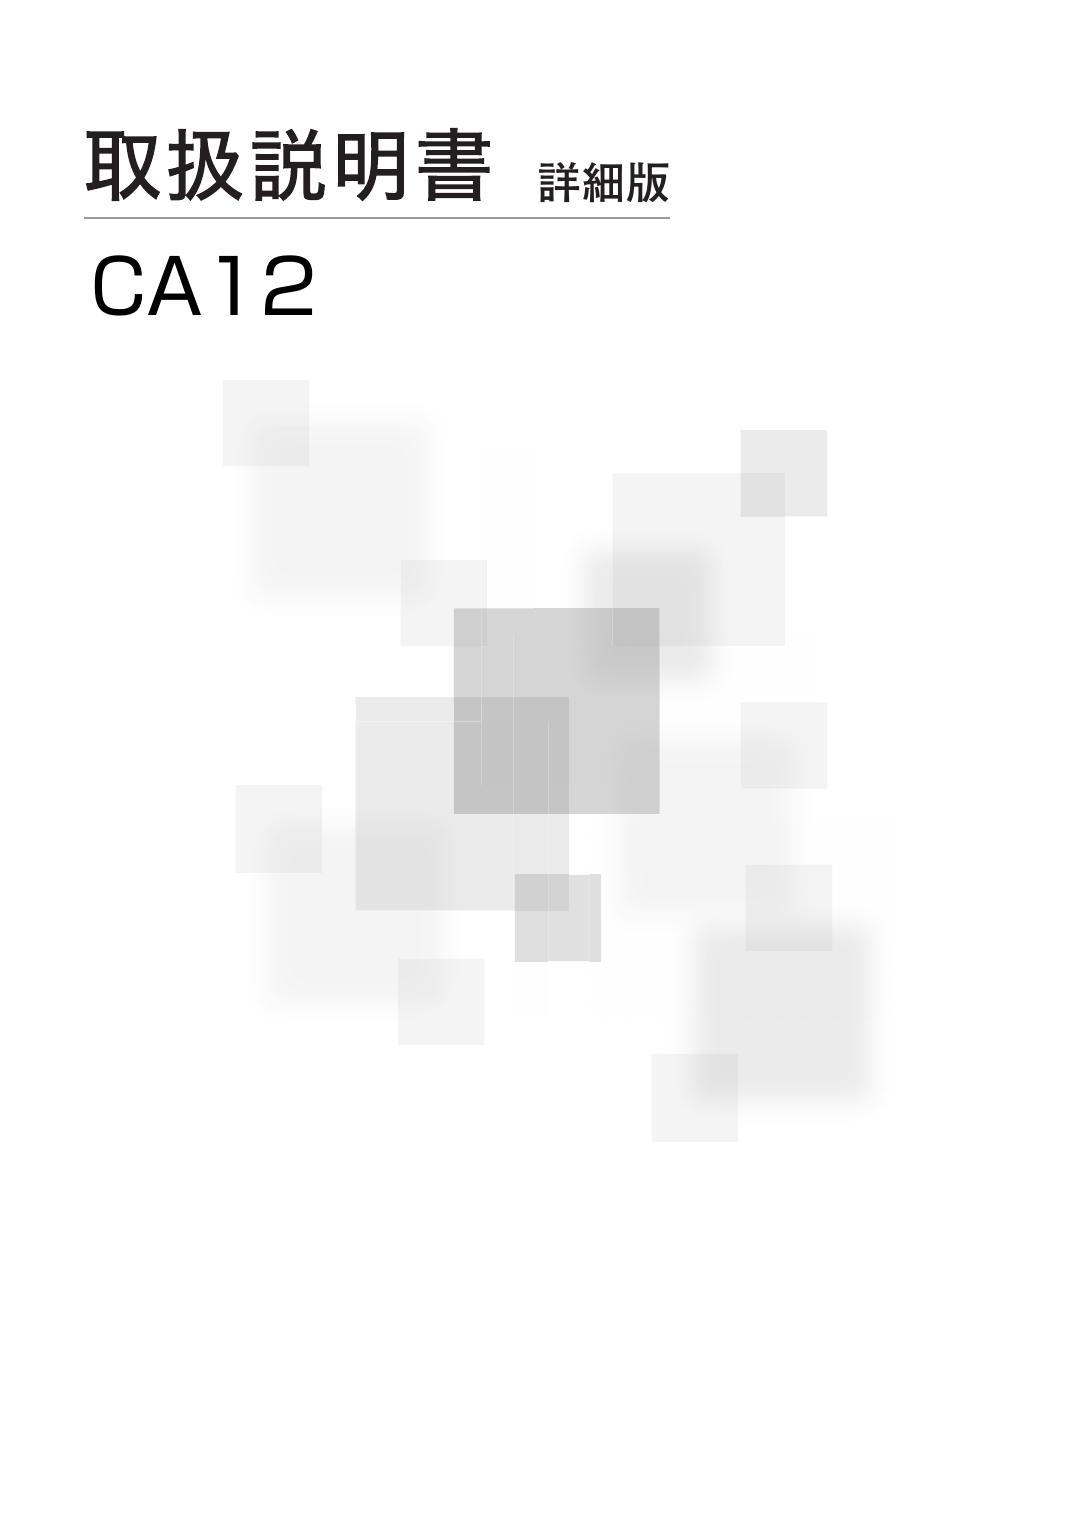 詳細版CA12